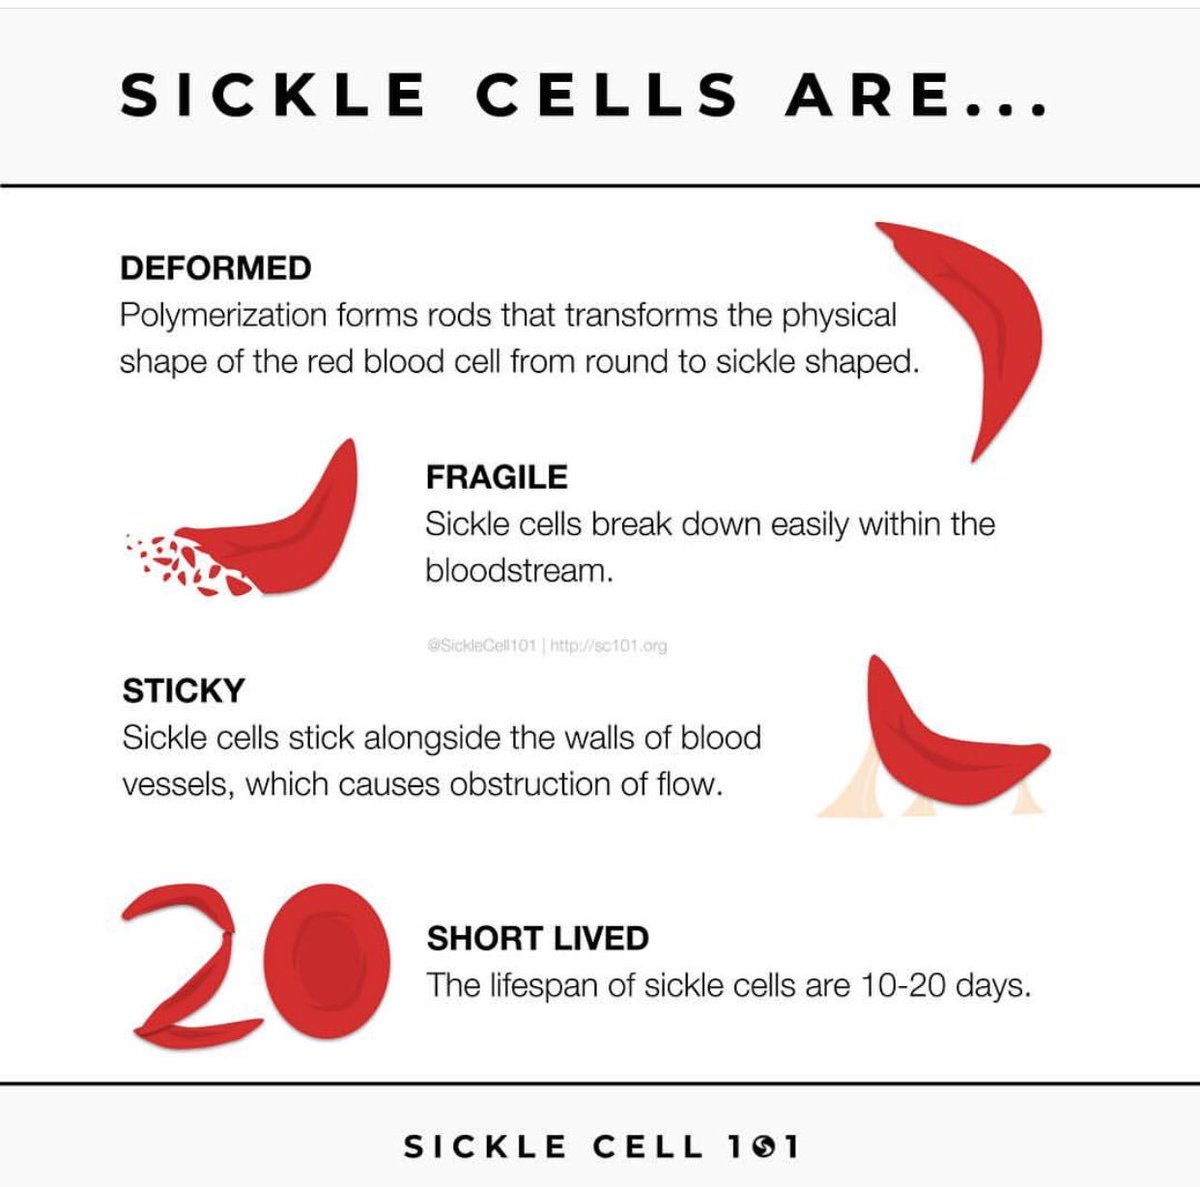 Sickle Cells Are... #SickleCellAwarenessMonth · #SickleCellEducation